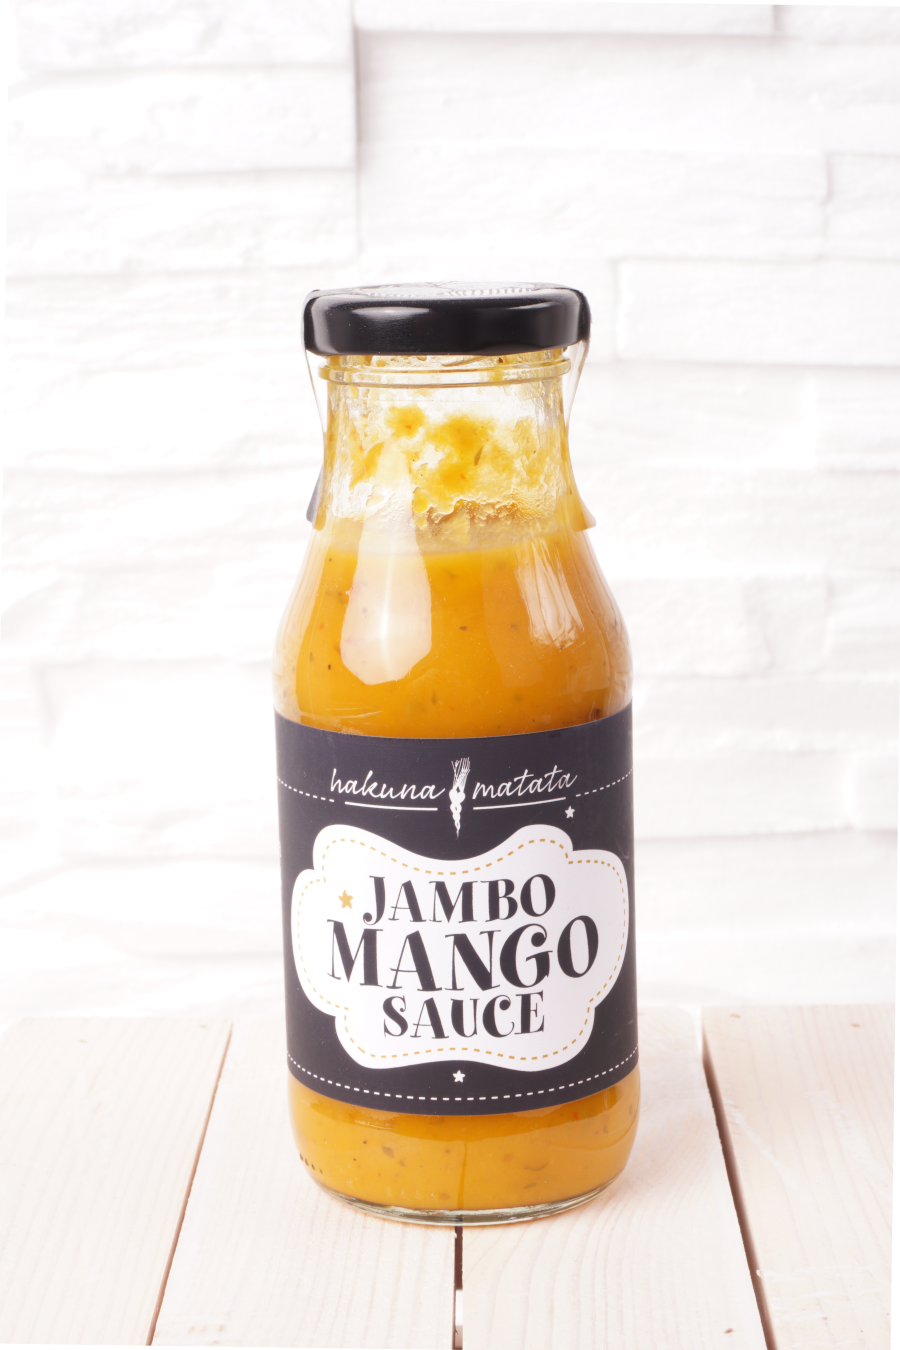 Jambo Mango Sauce, 250 g